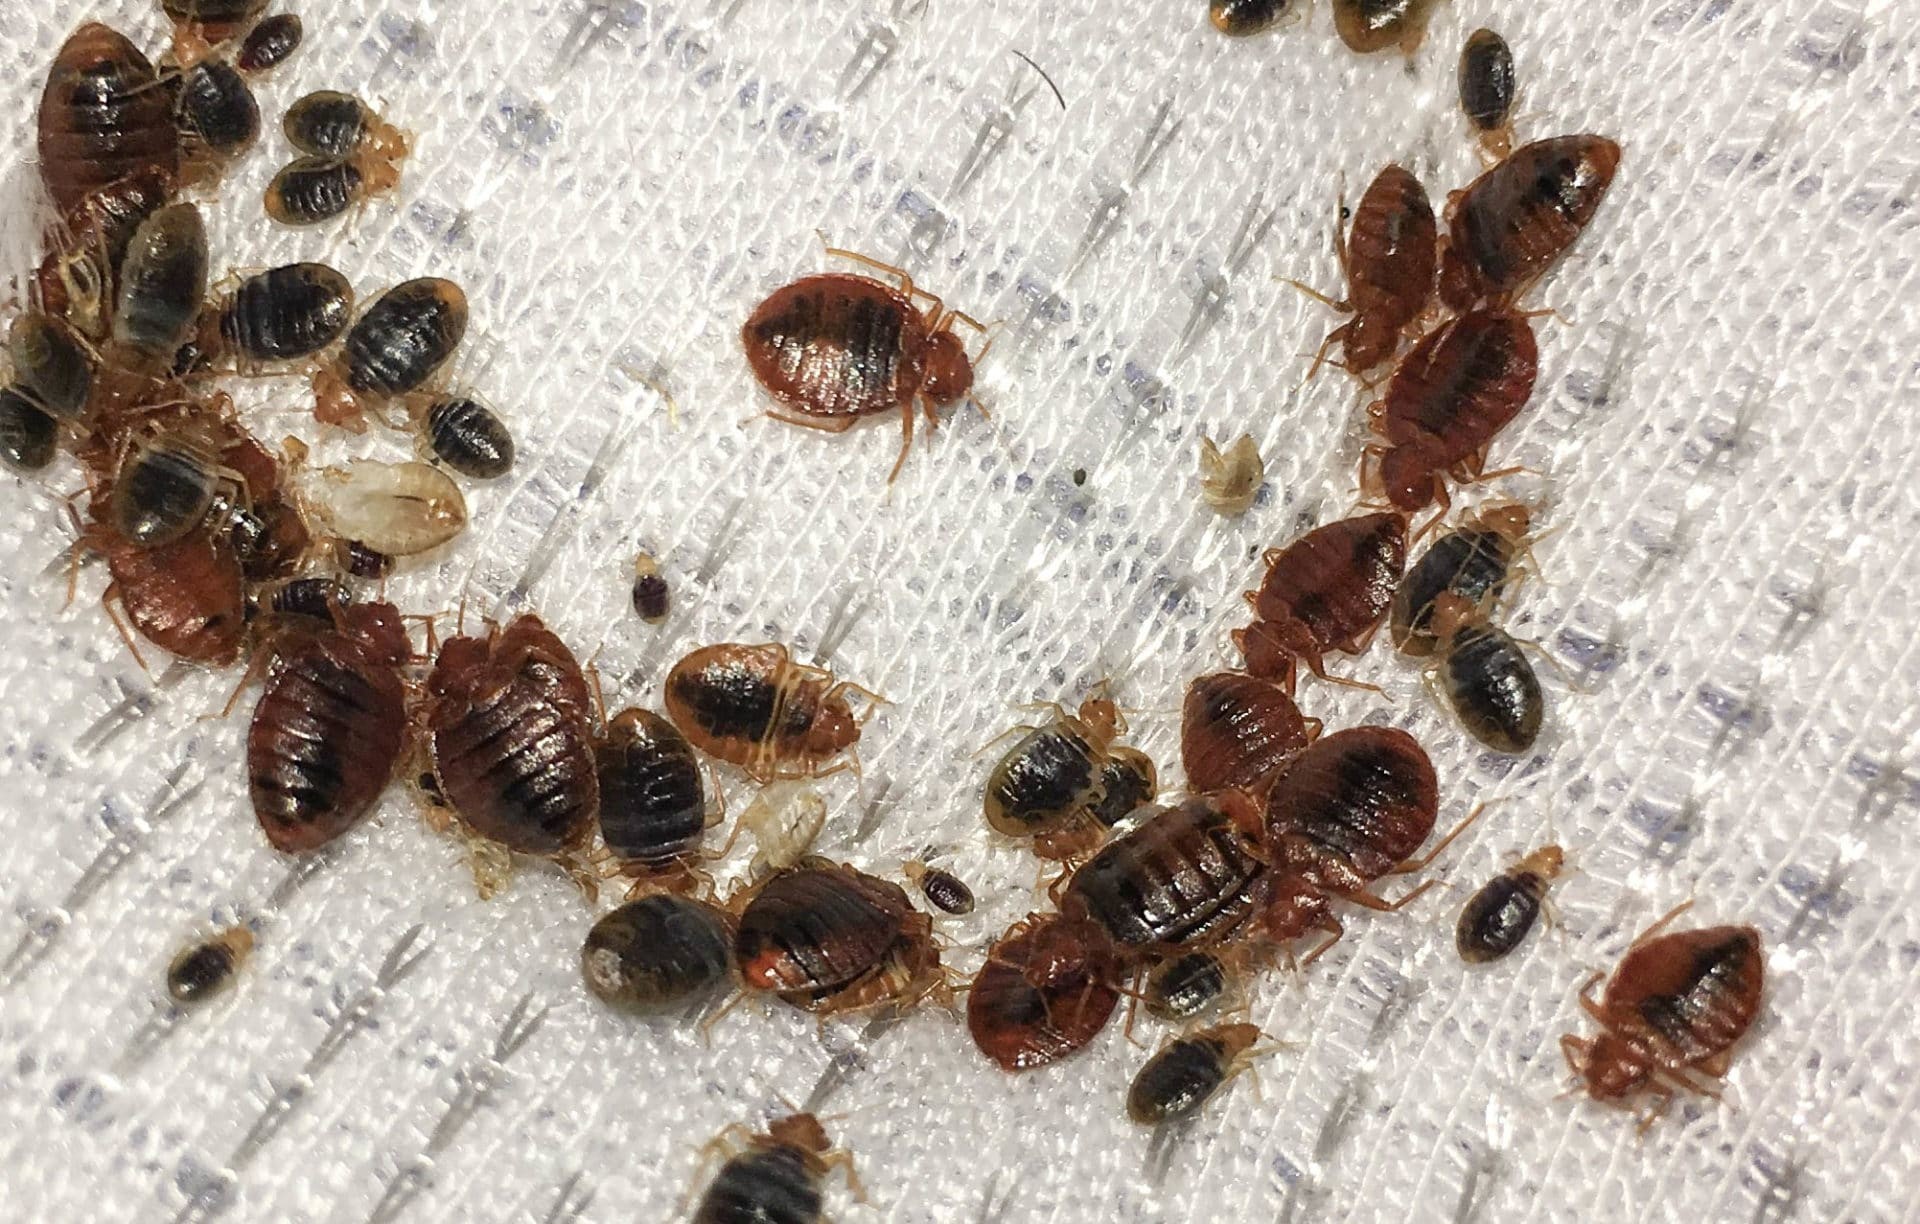 bedbugs hayat al jazeerah.jpg